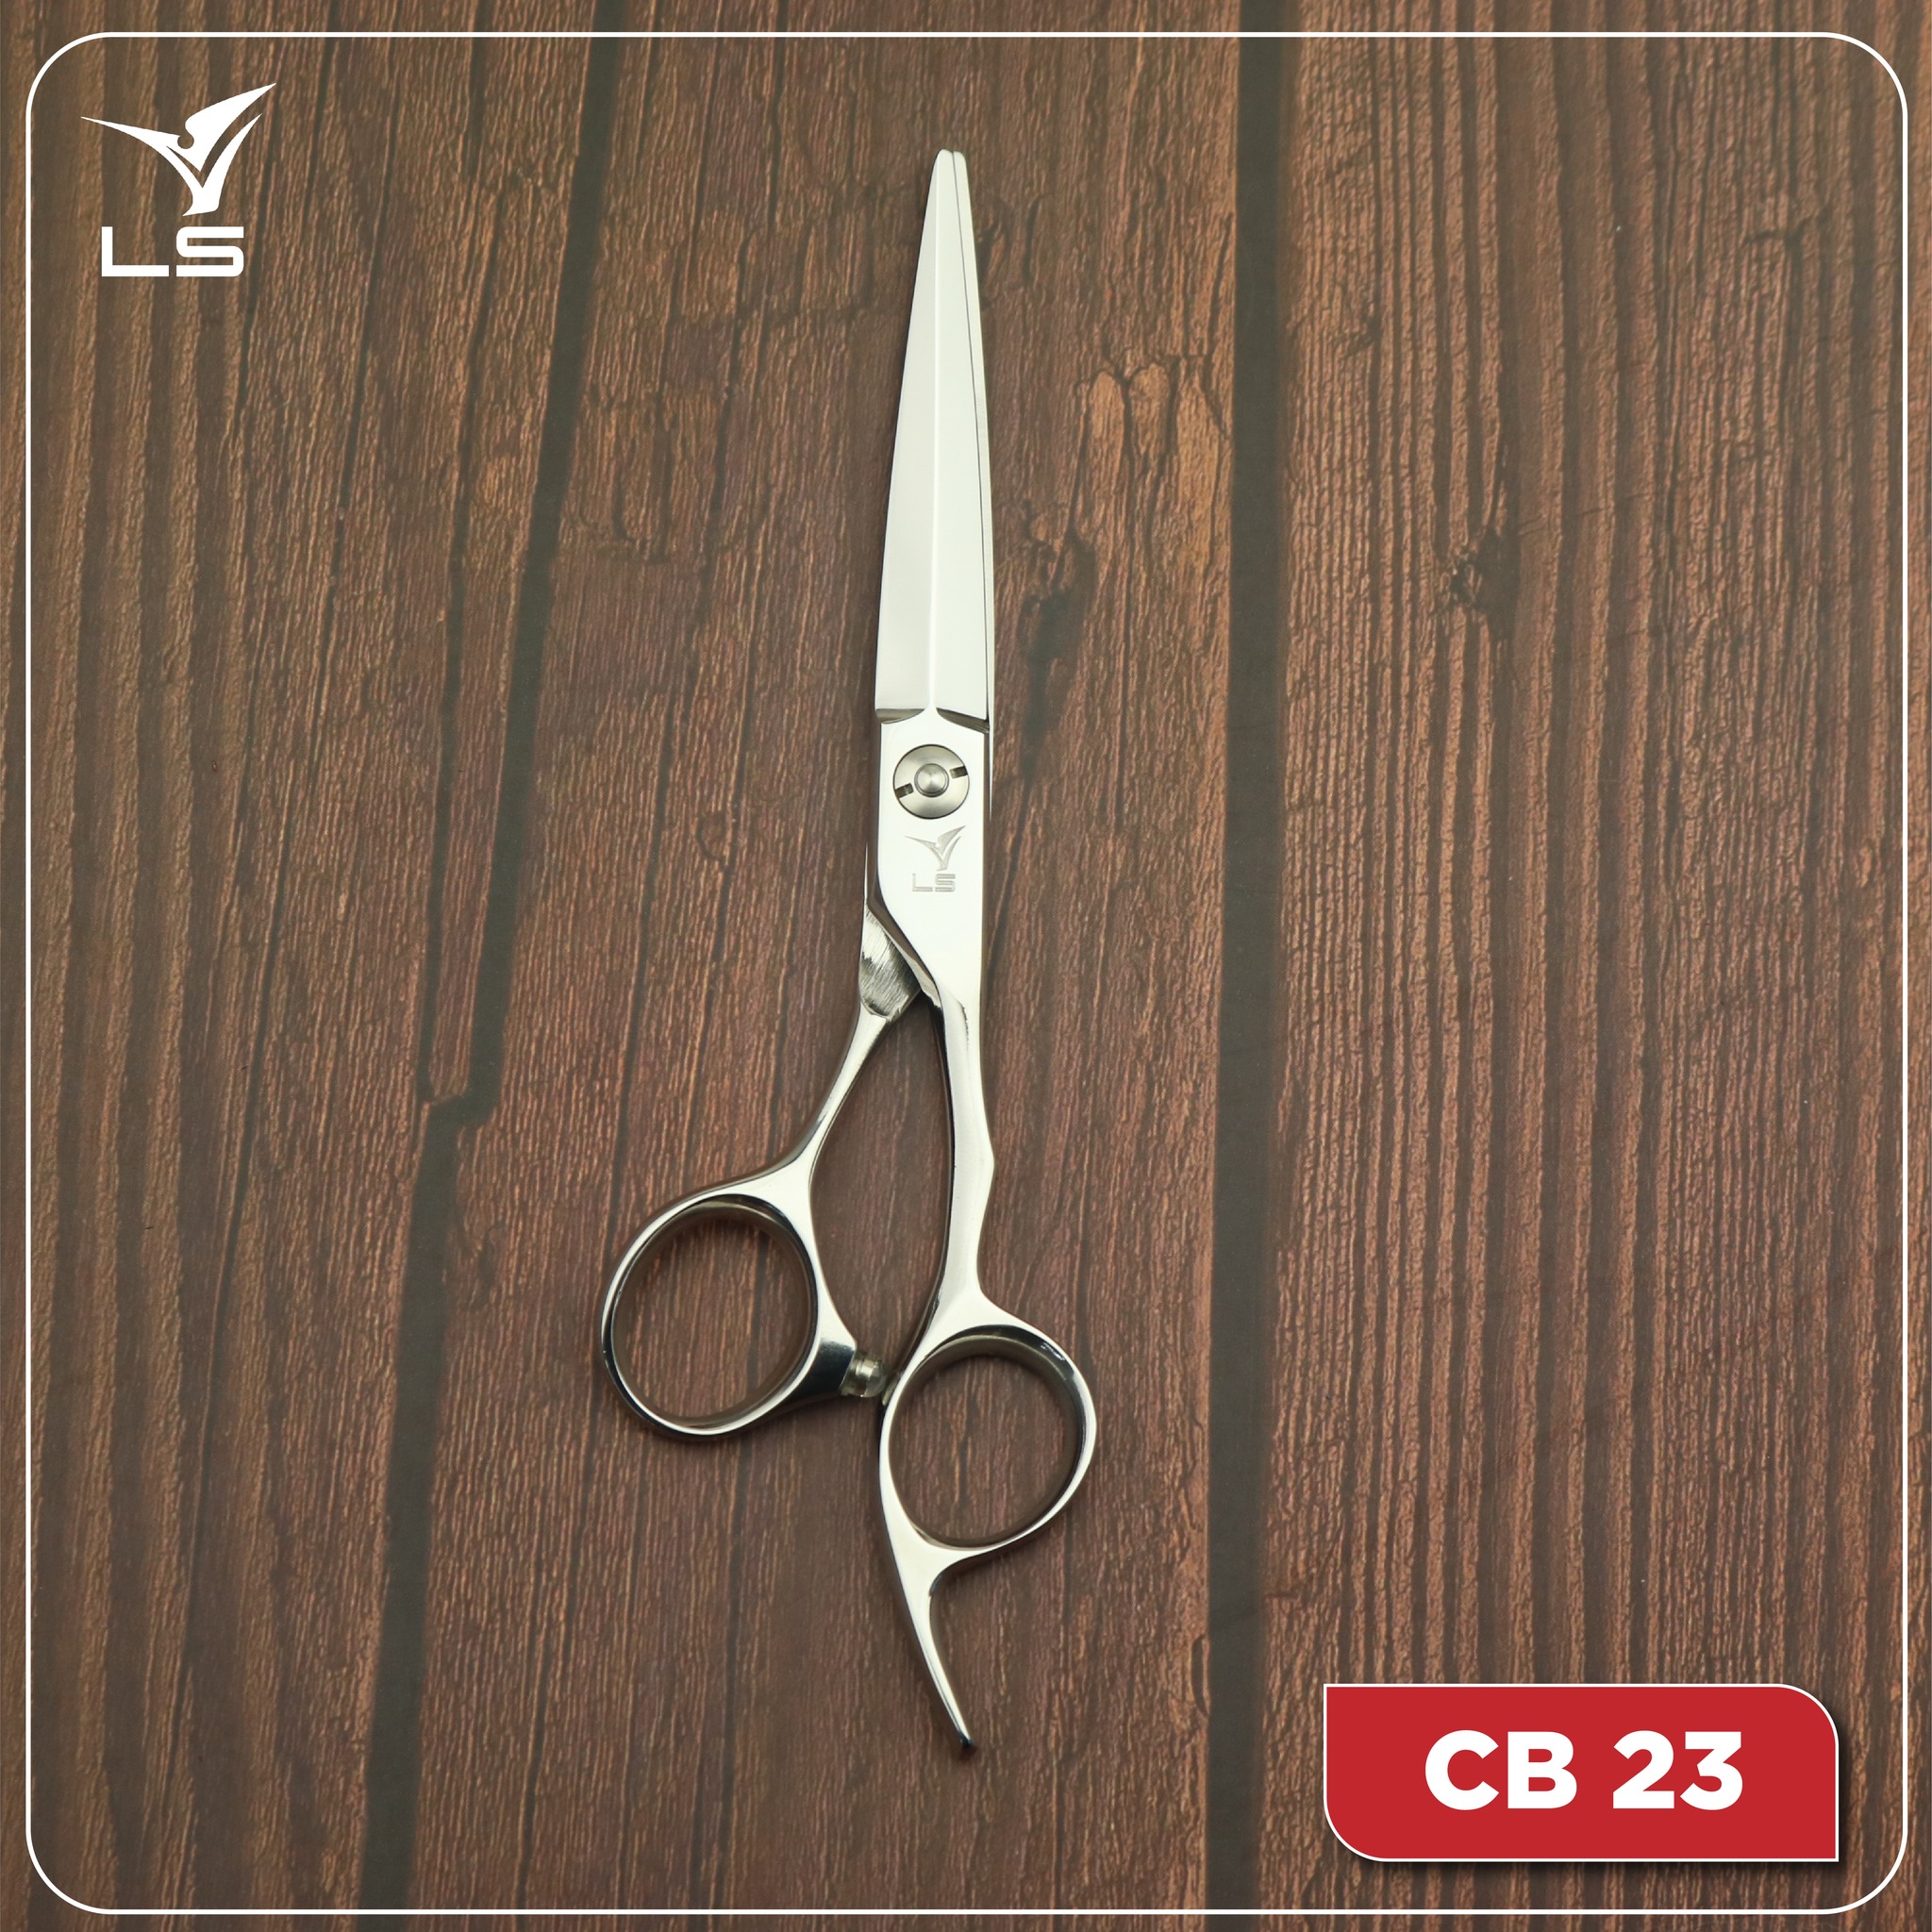 Kéo cắt tóc VLS CB23